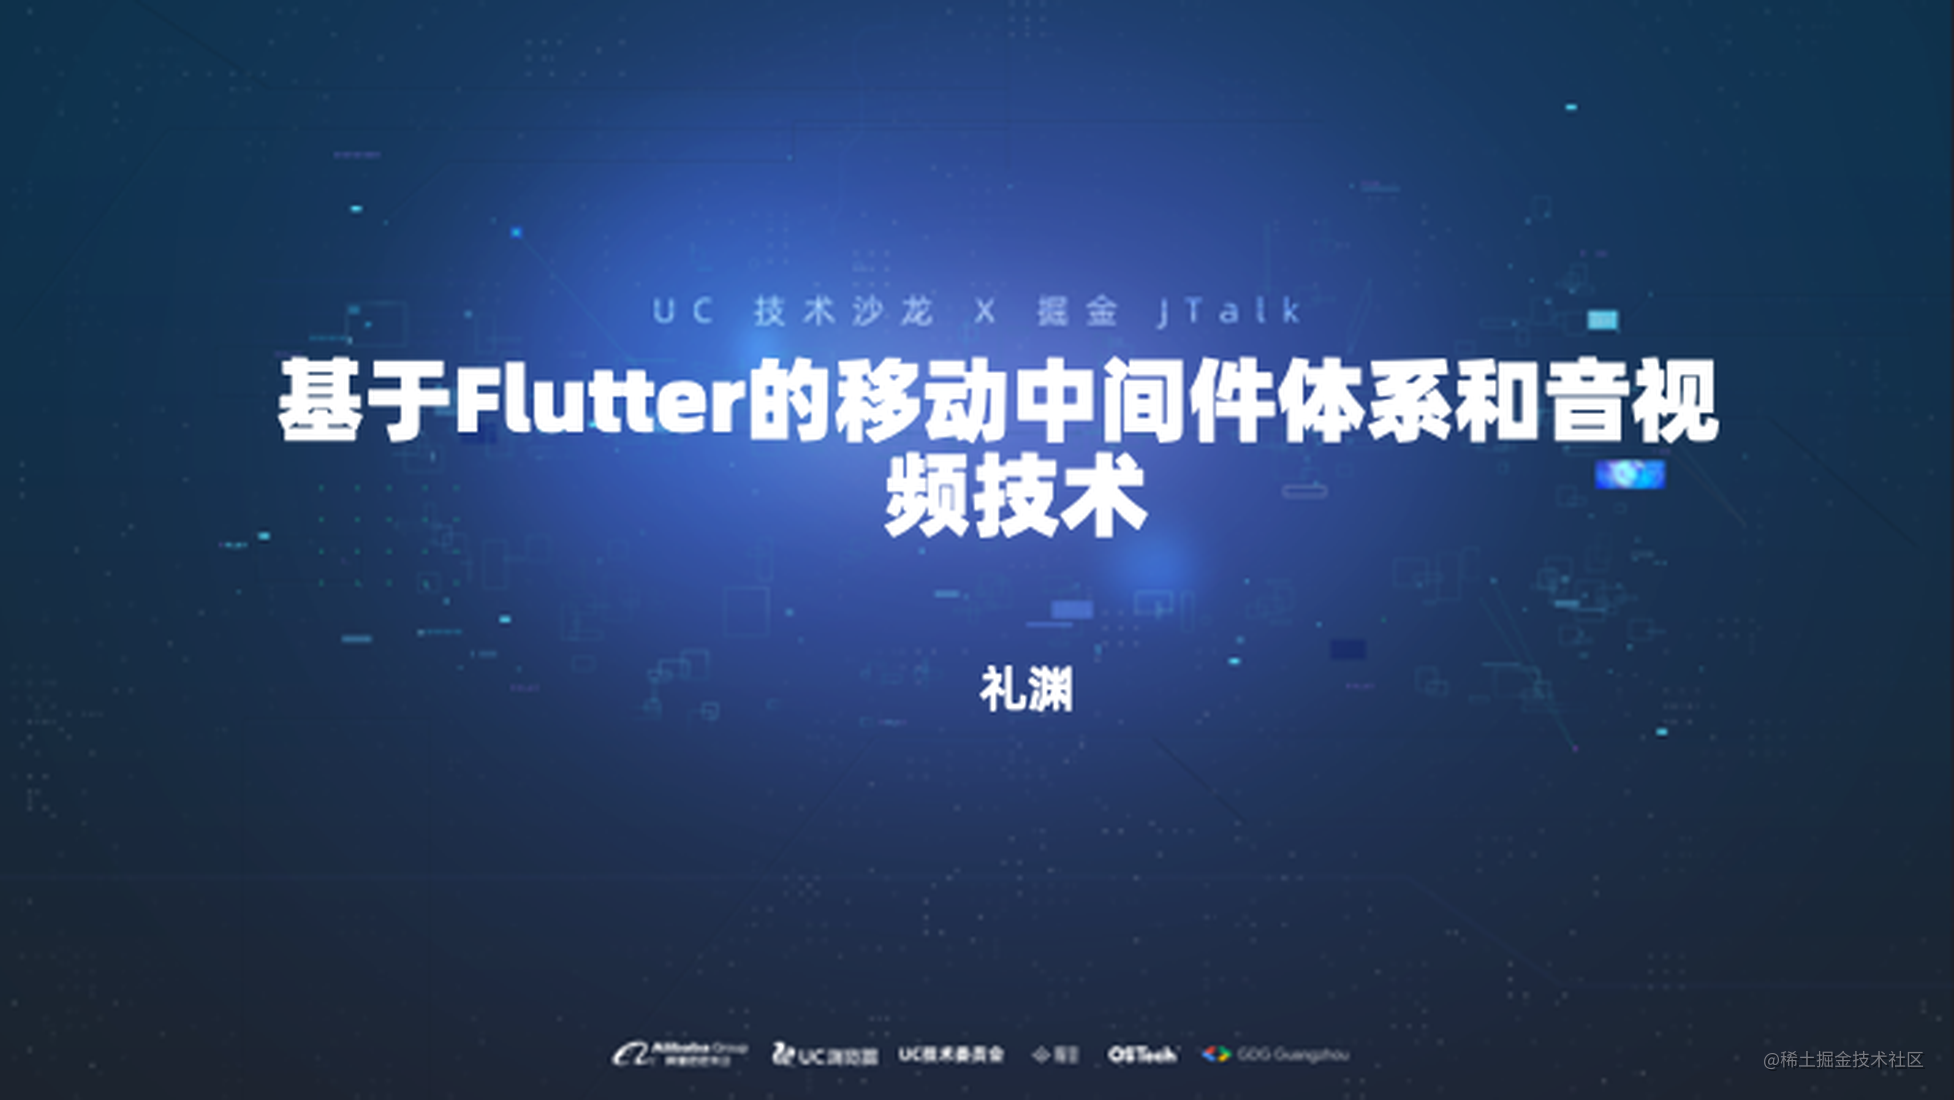 基于 Flutter 的移动中间件体系和音视频技术